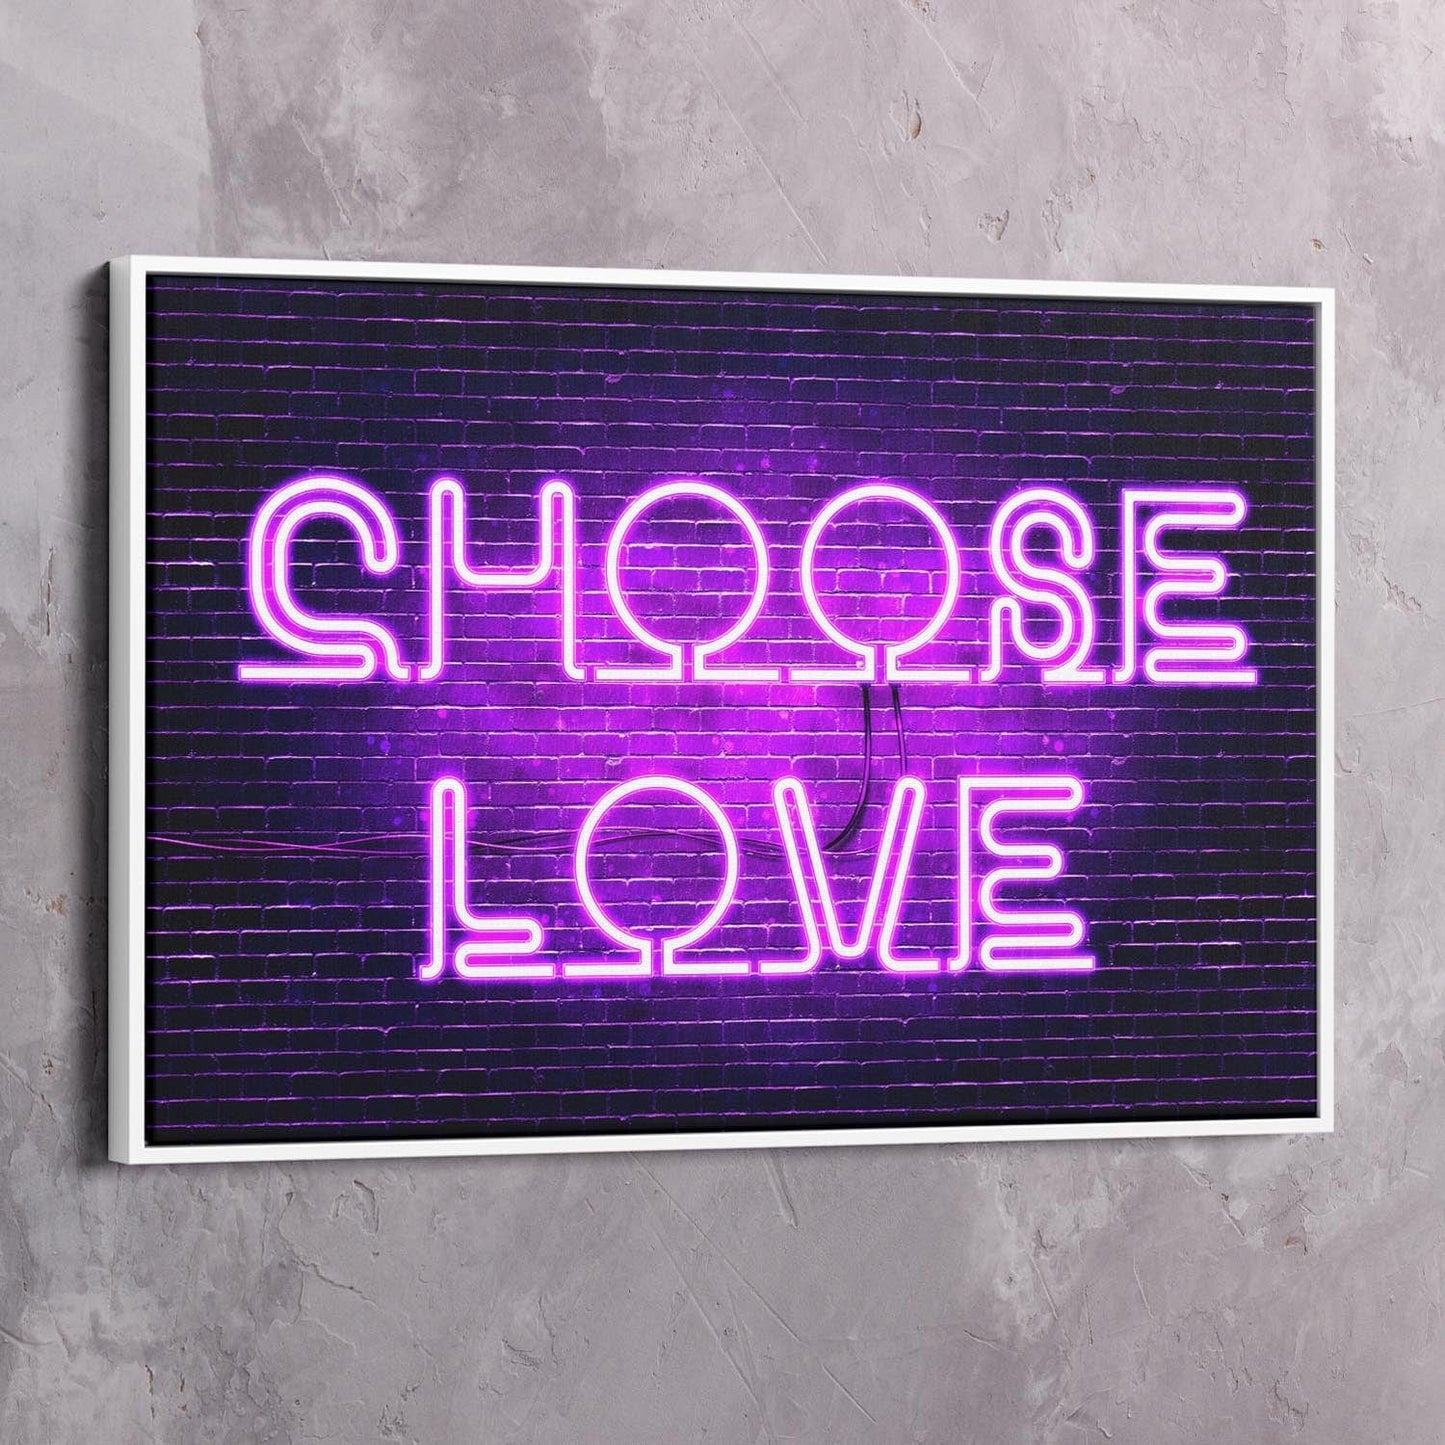 Neon Choose Love Wall Art | Inspirational Wall Art Motivational Wall Art Quotes Office Art | ImpaktMaker Exclusive Canvas Art Landscape